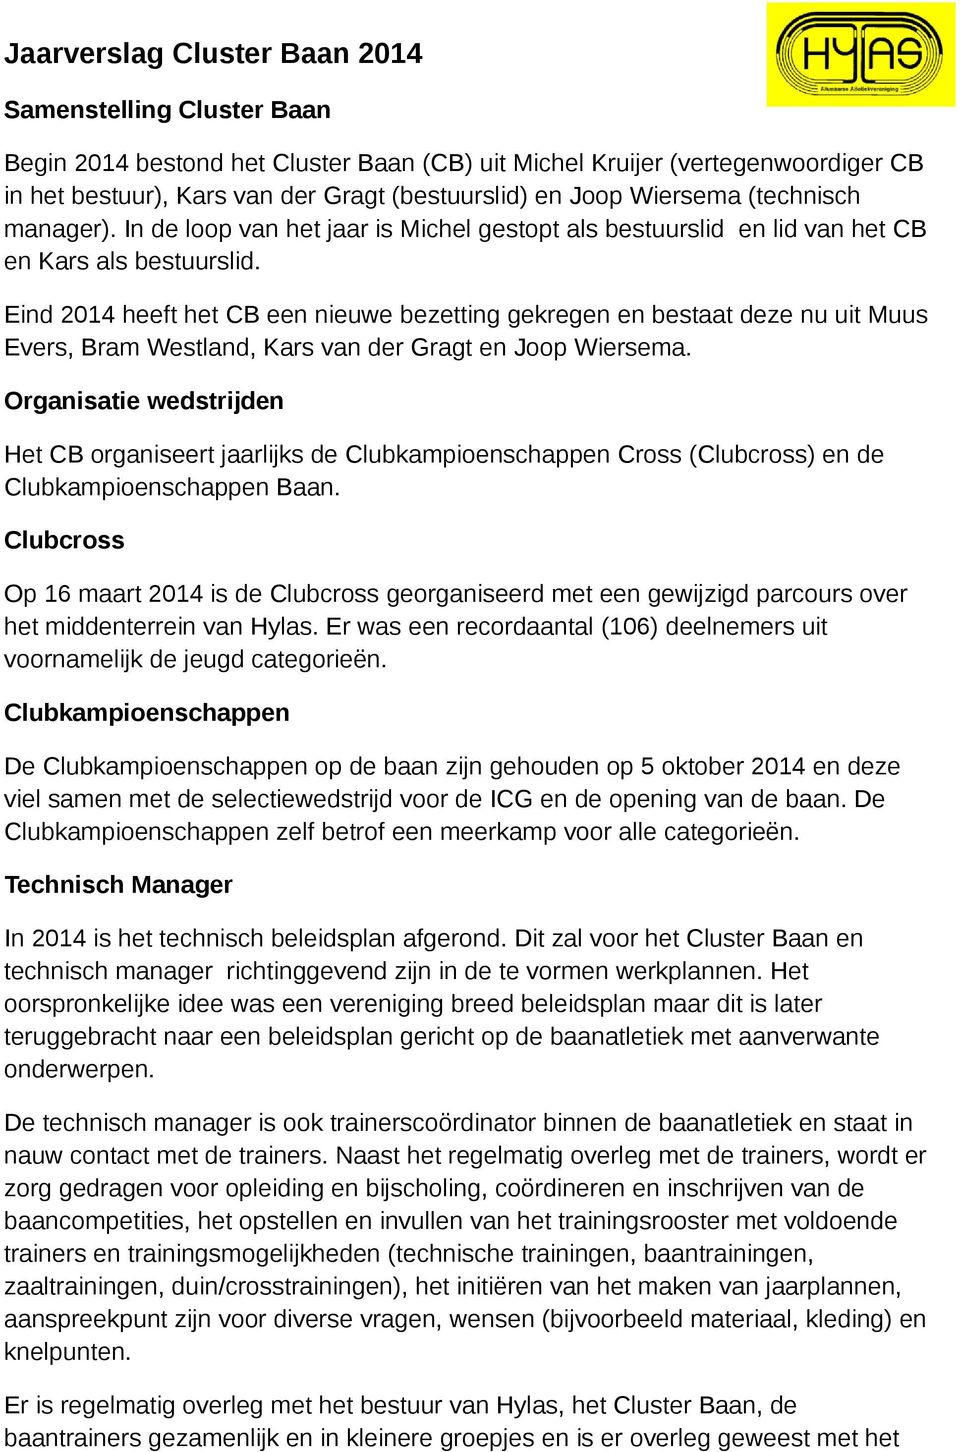 Eind 2014 heeft het CB een nieuwe bezetting gekregen en bestaat deze nu uit Muus Evers, Bram Westland, Kars van der Gragt en Joop Wiersema.